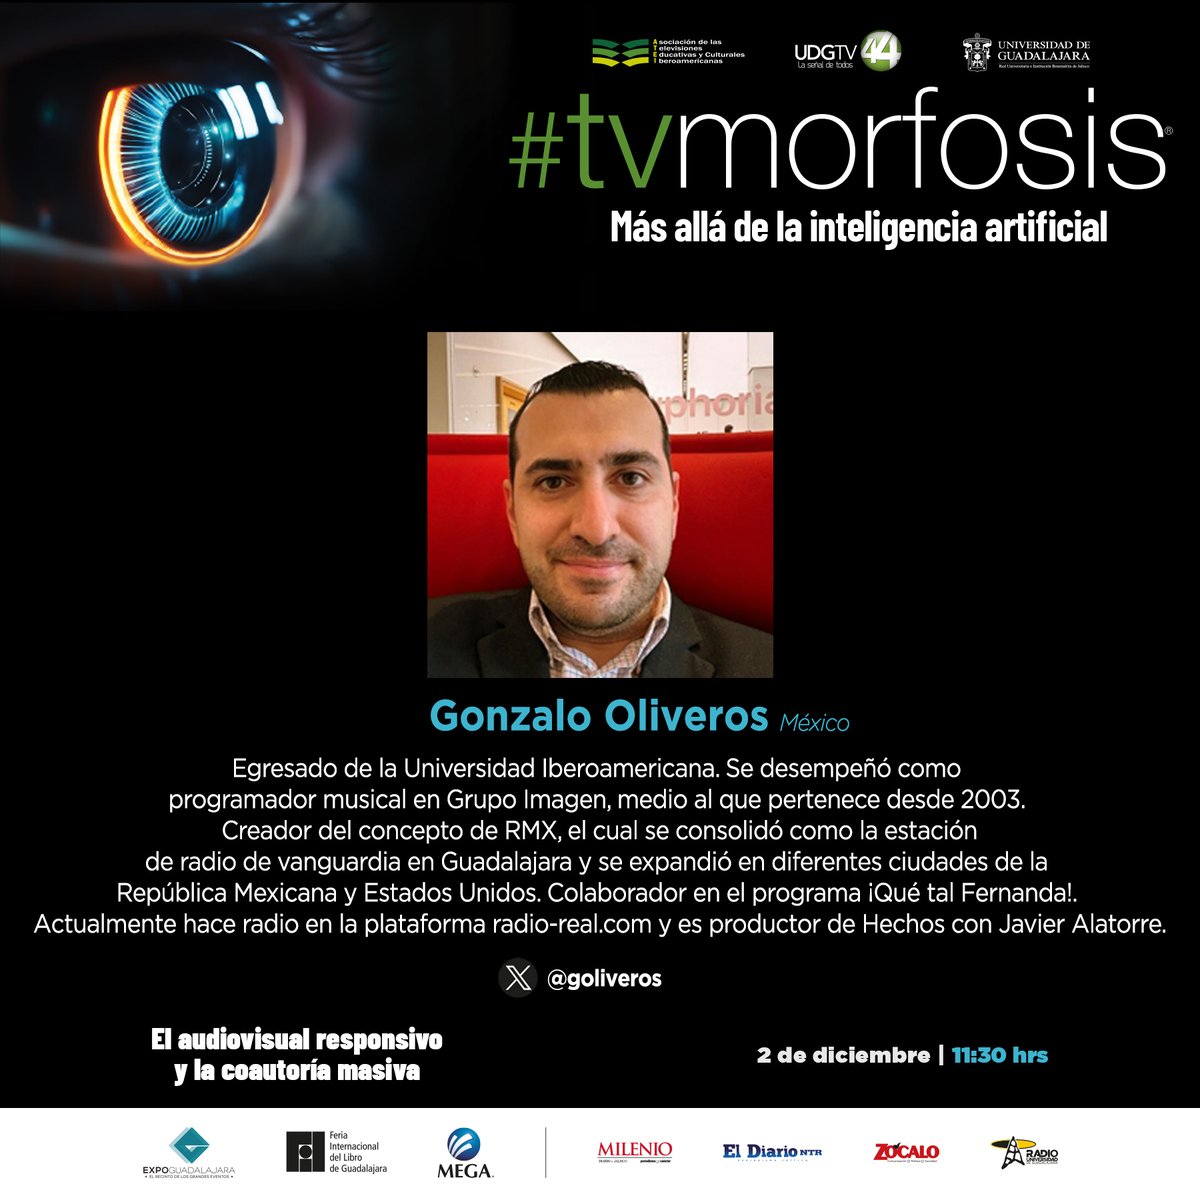 📻📺@goliveros será parte del panel 'El audiovisual responsivo y la coautoría masiva' en @TVMORFOSIS.
Él es creador del concepto @RMXradio y productor de #Hechos con @Javier_Alatorre.

🗓️2 diciembre
⌚11:30 hrs